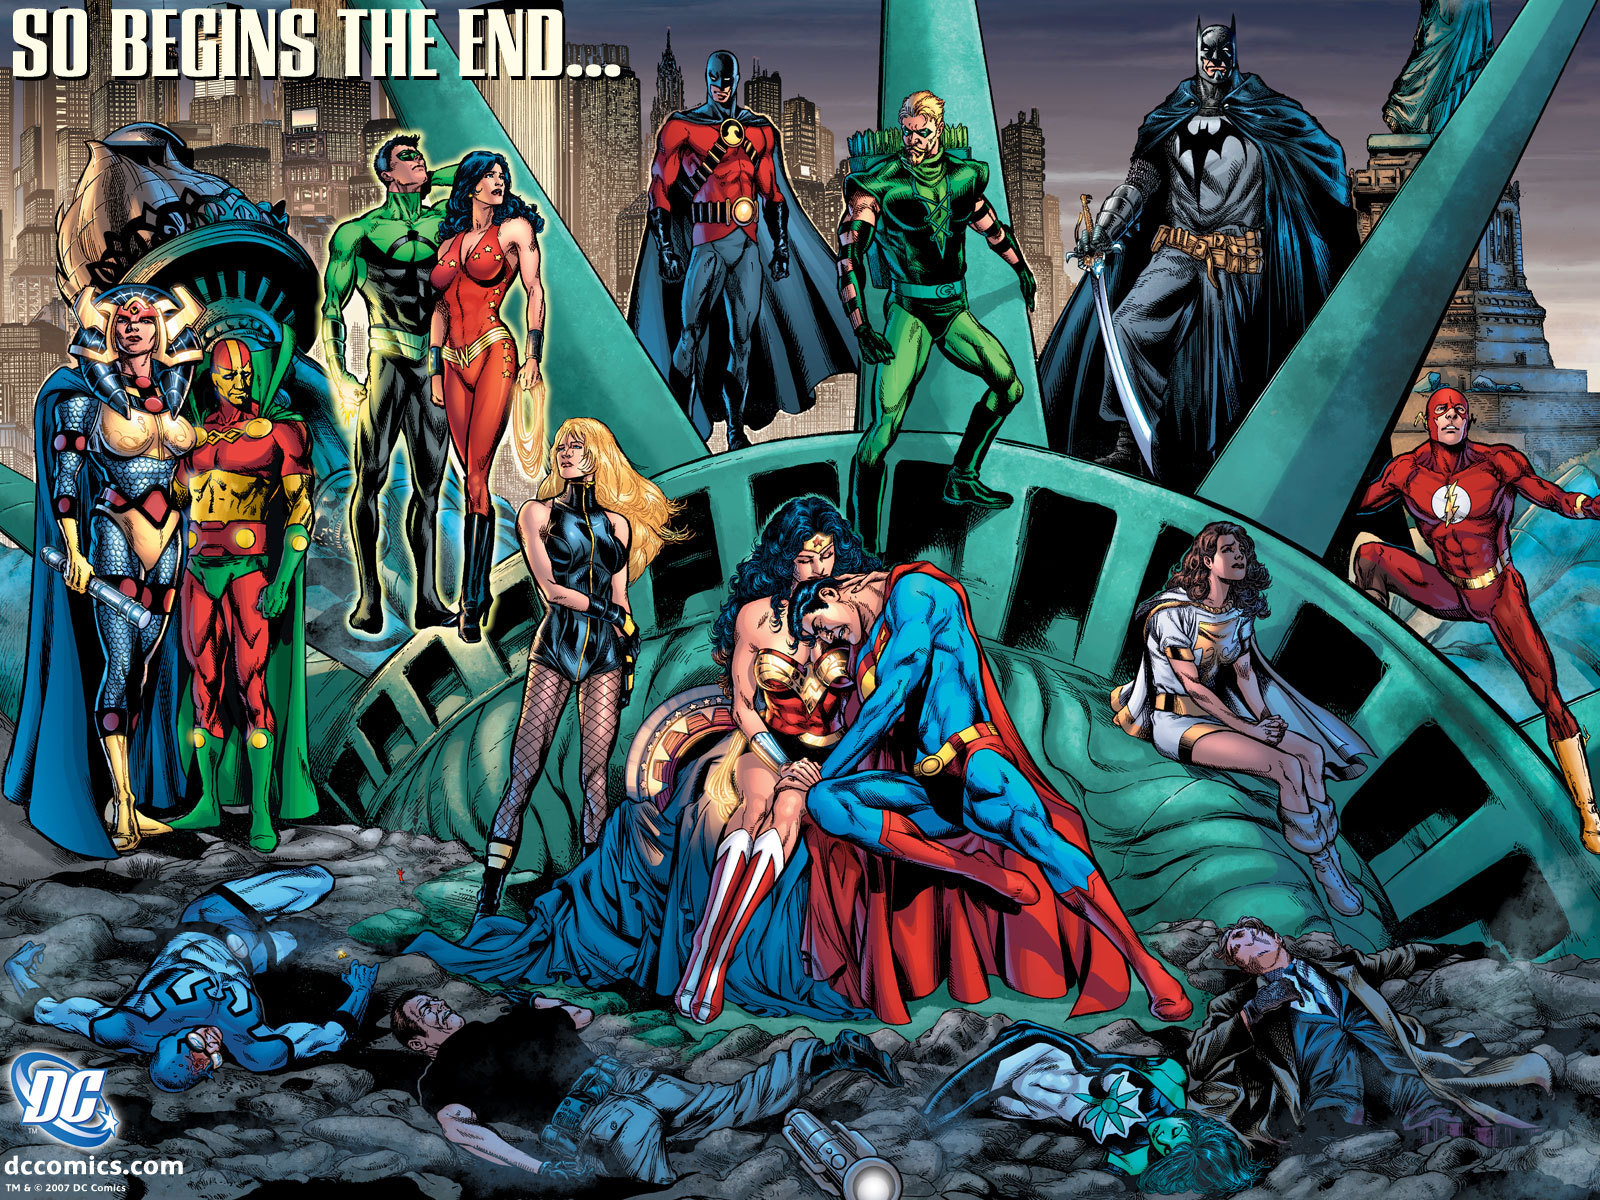 comic book wallpaper for walls,fictional character,superhero,comics,fiction,justice league